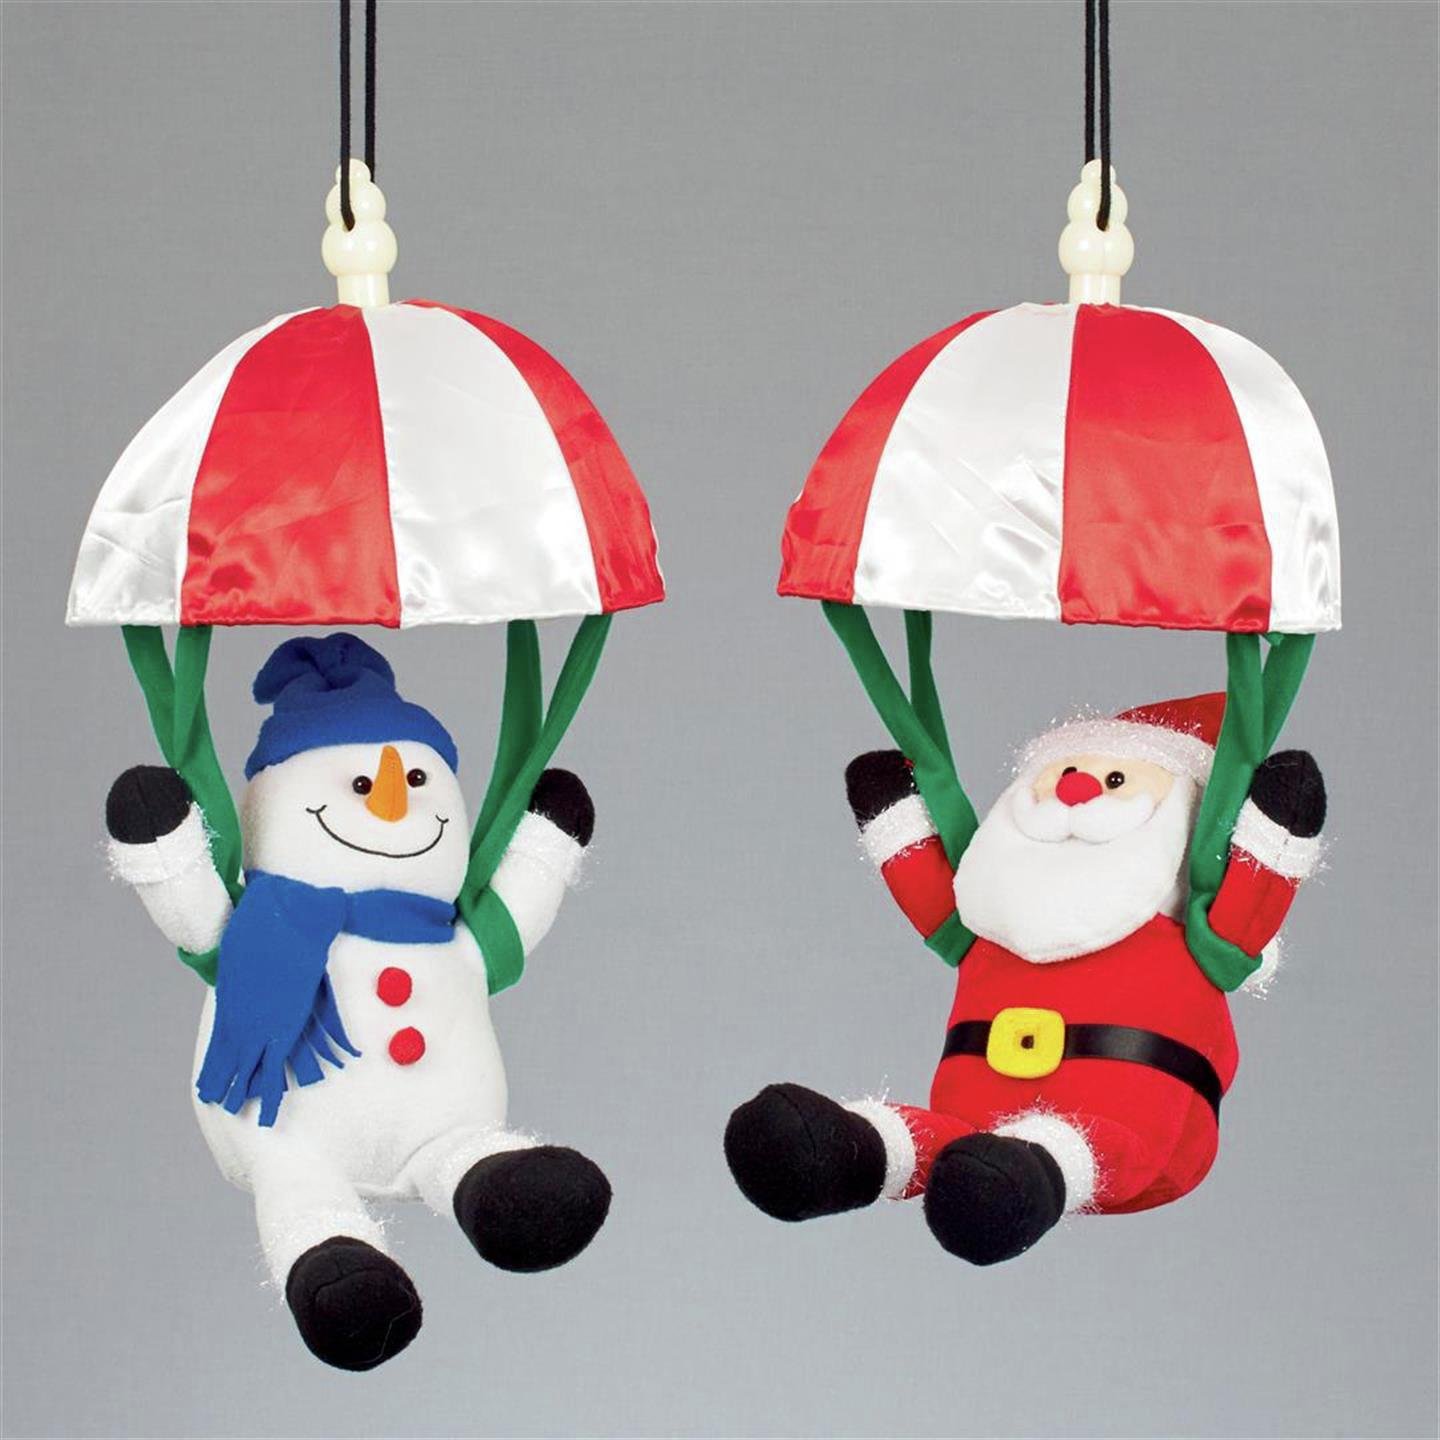 Premier Decorations - Santa & Snowman Parachute Decorations